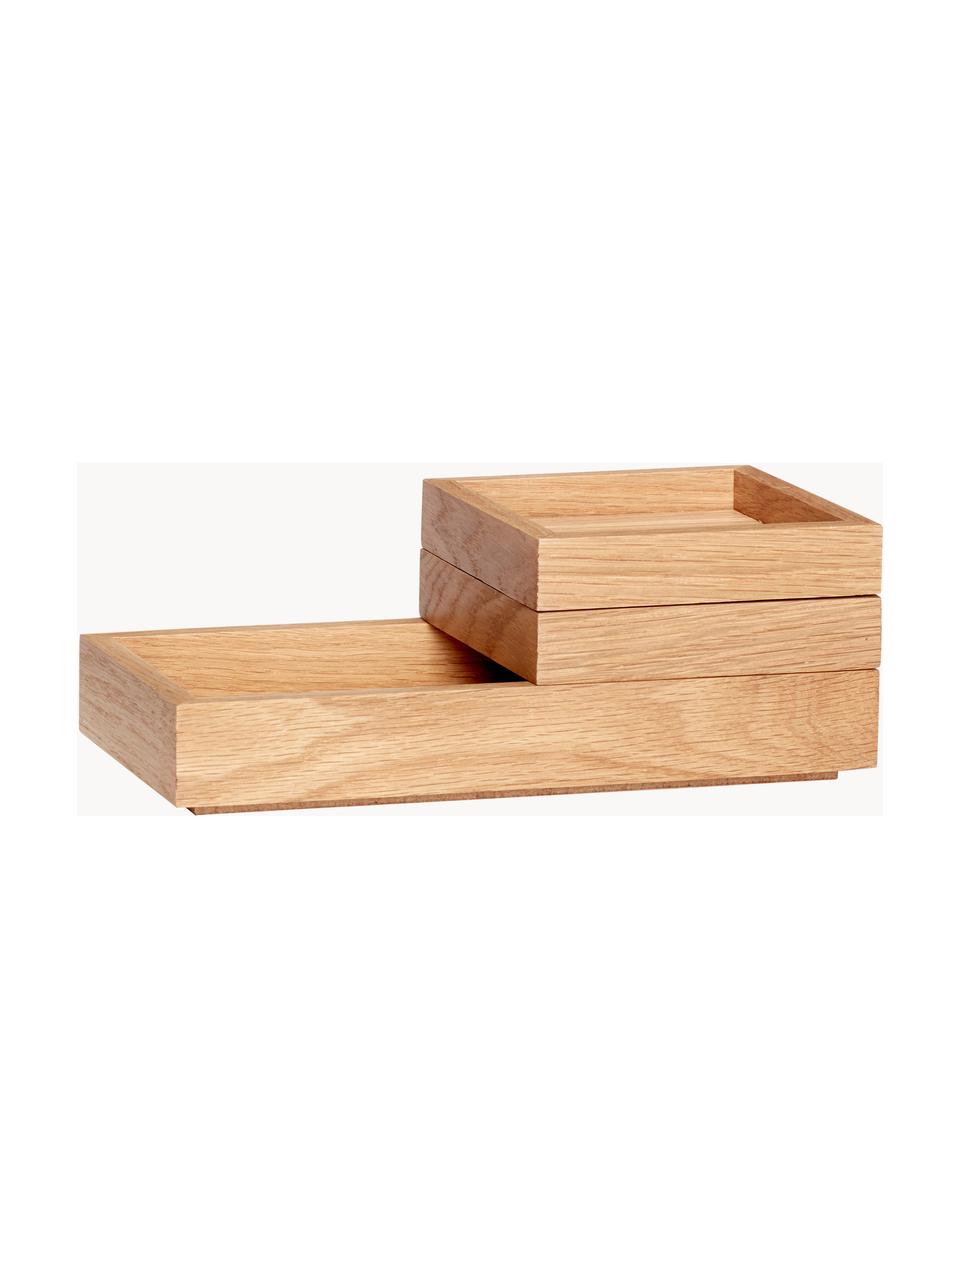 Stapelbare Aufbewahrungsboxen Klara, 3er-Set, Eichenholzfurnier, Eichenholz

Dieses Produkt wird aus nachhaltig gewonnenem, FSC®-zertifiziertem Holz gefertigt., Eichenholz, Set in verschiedenen Grossen